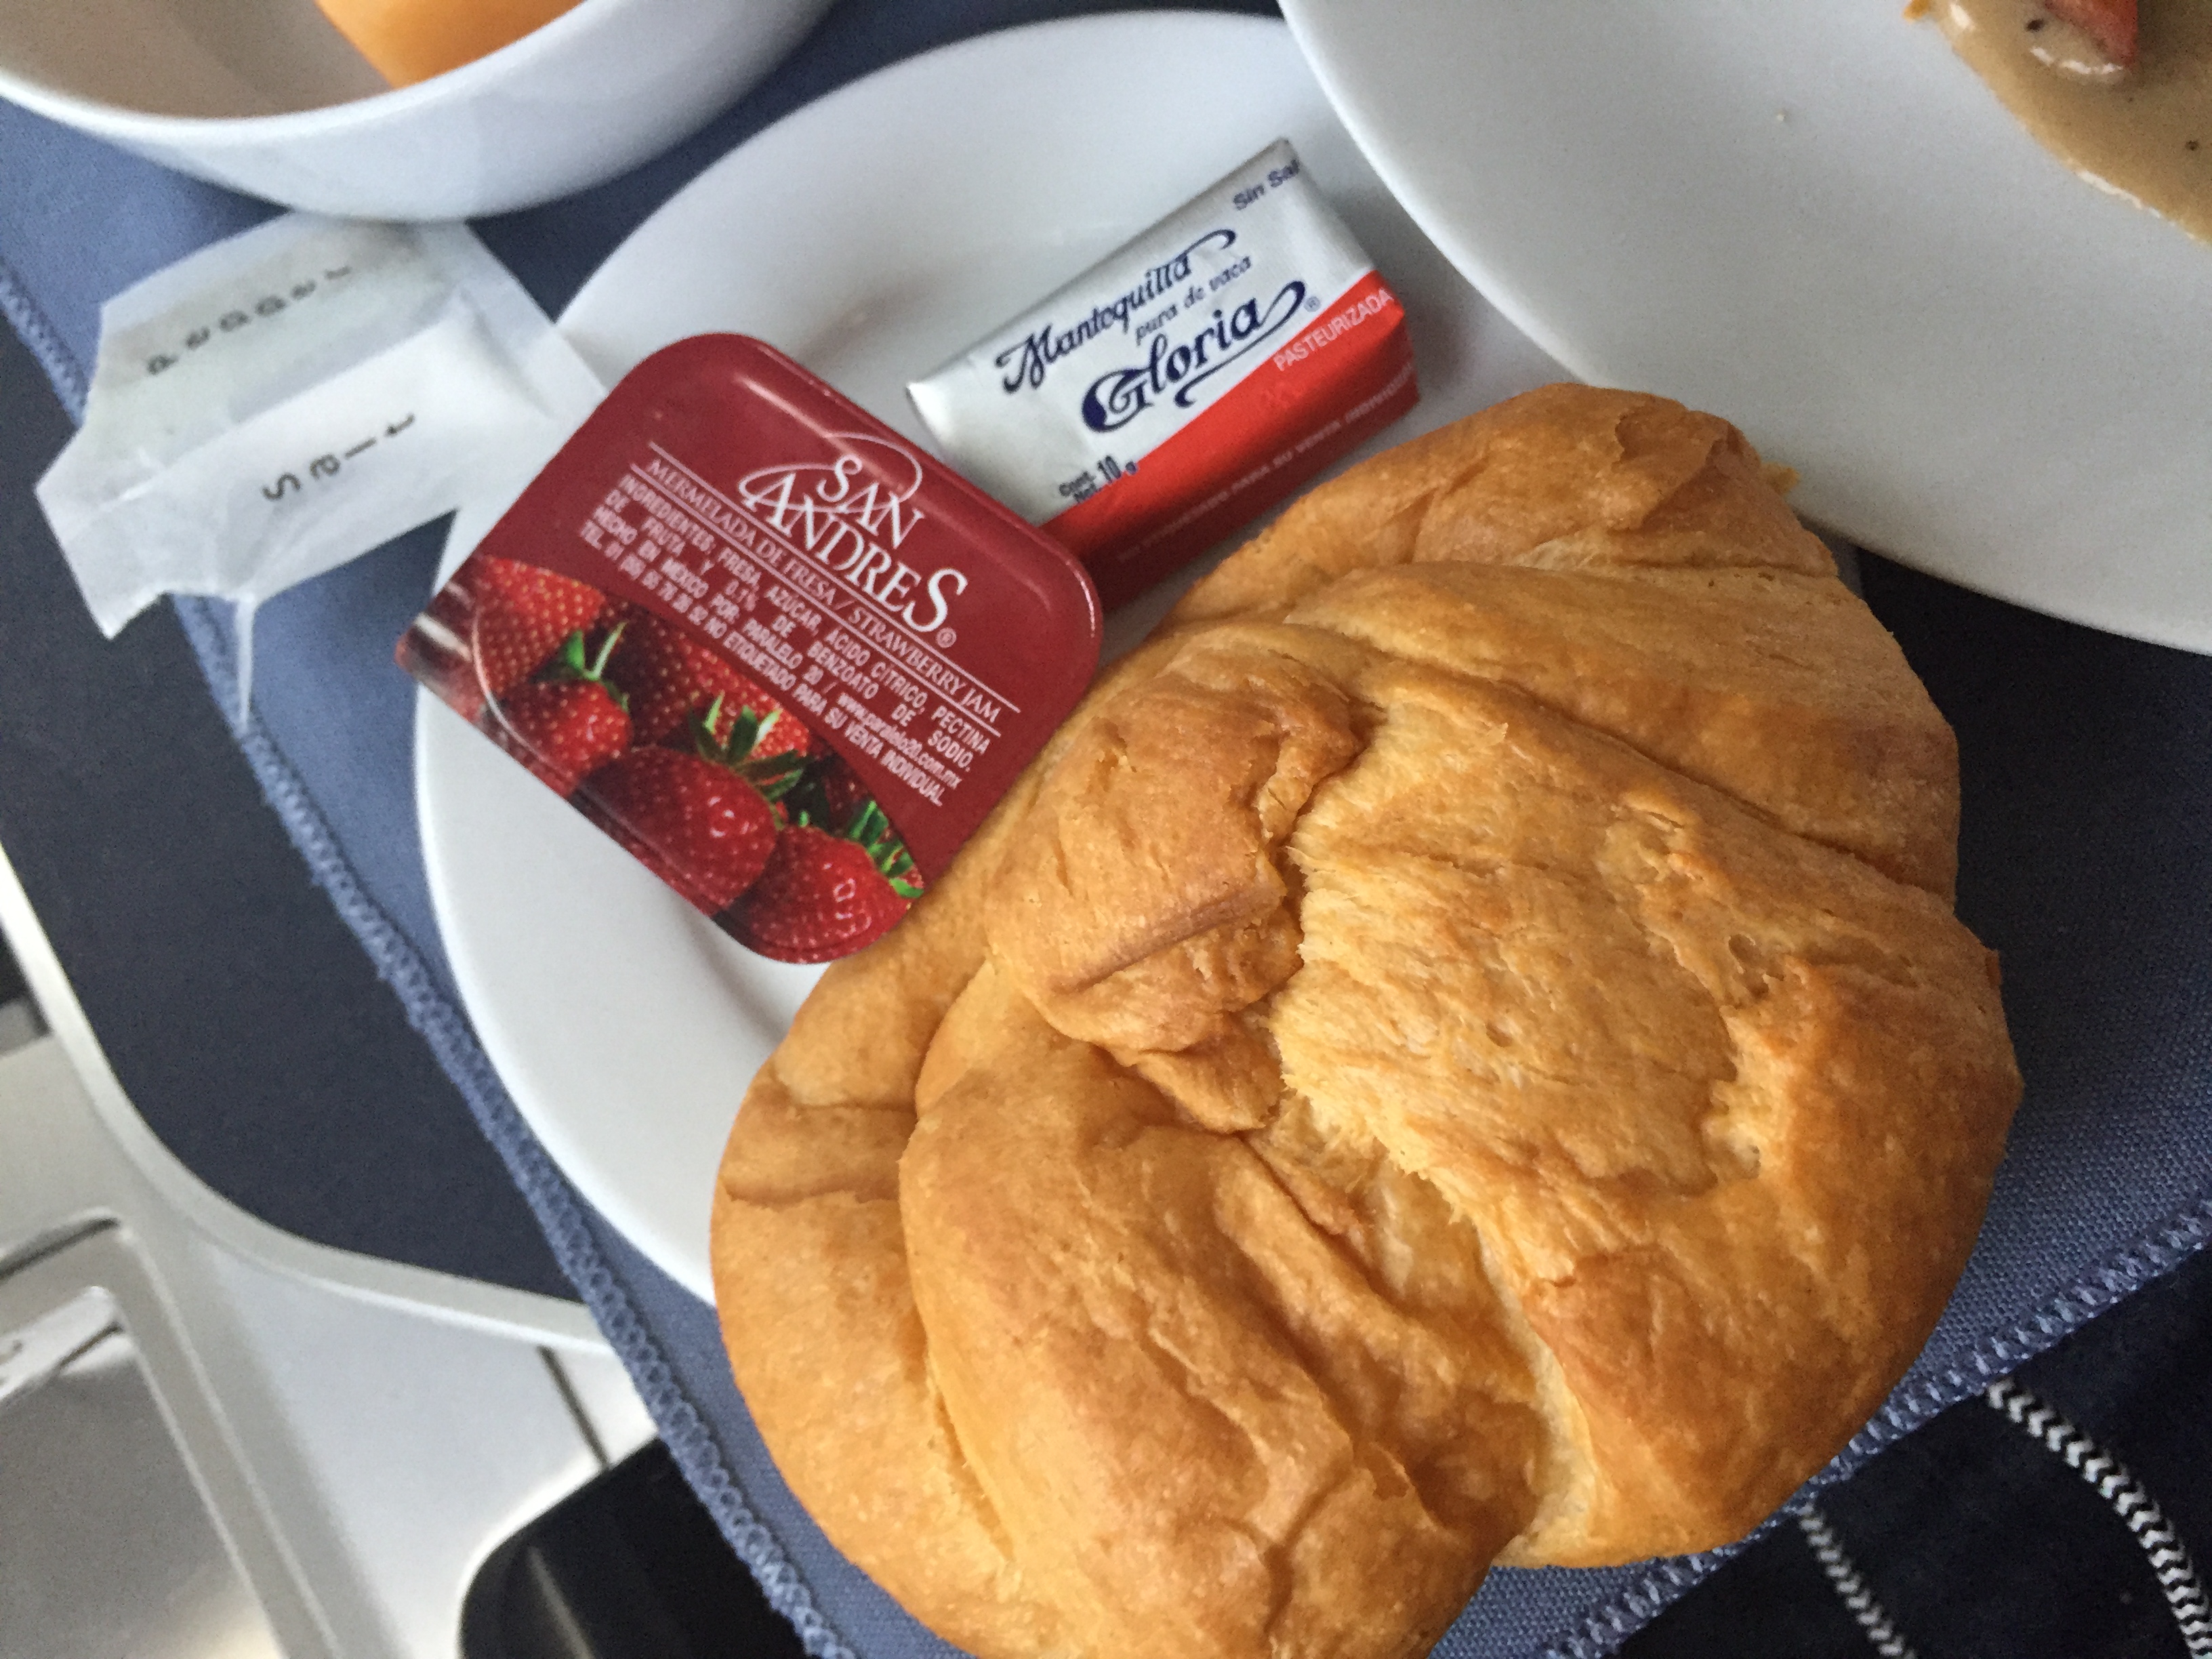 Adicional al desayuno, se ofreció una charola de pan caliente con distintas opciones, yo opté por el croissant. 